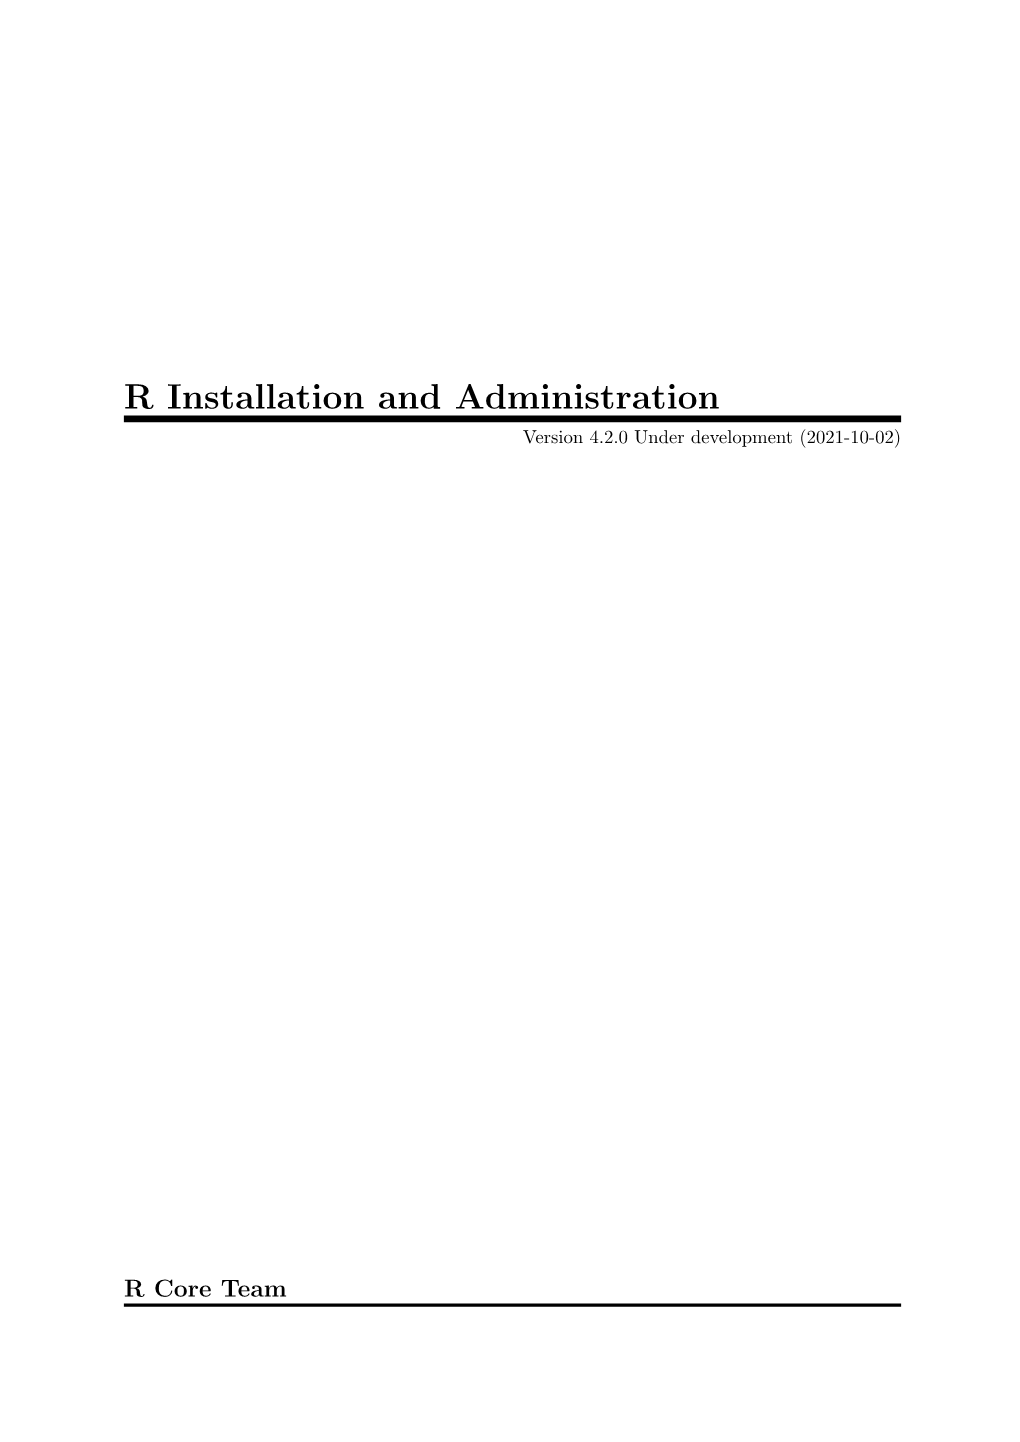 R Installation and Administration Version 4.2.0 Under Development (2021-10-02)